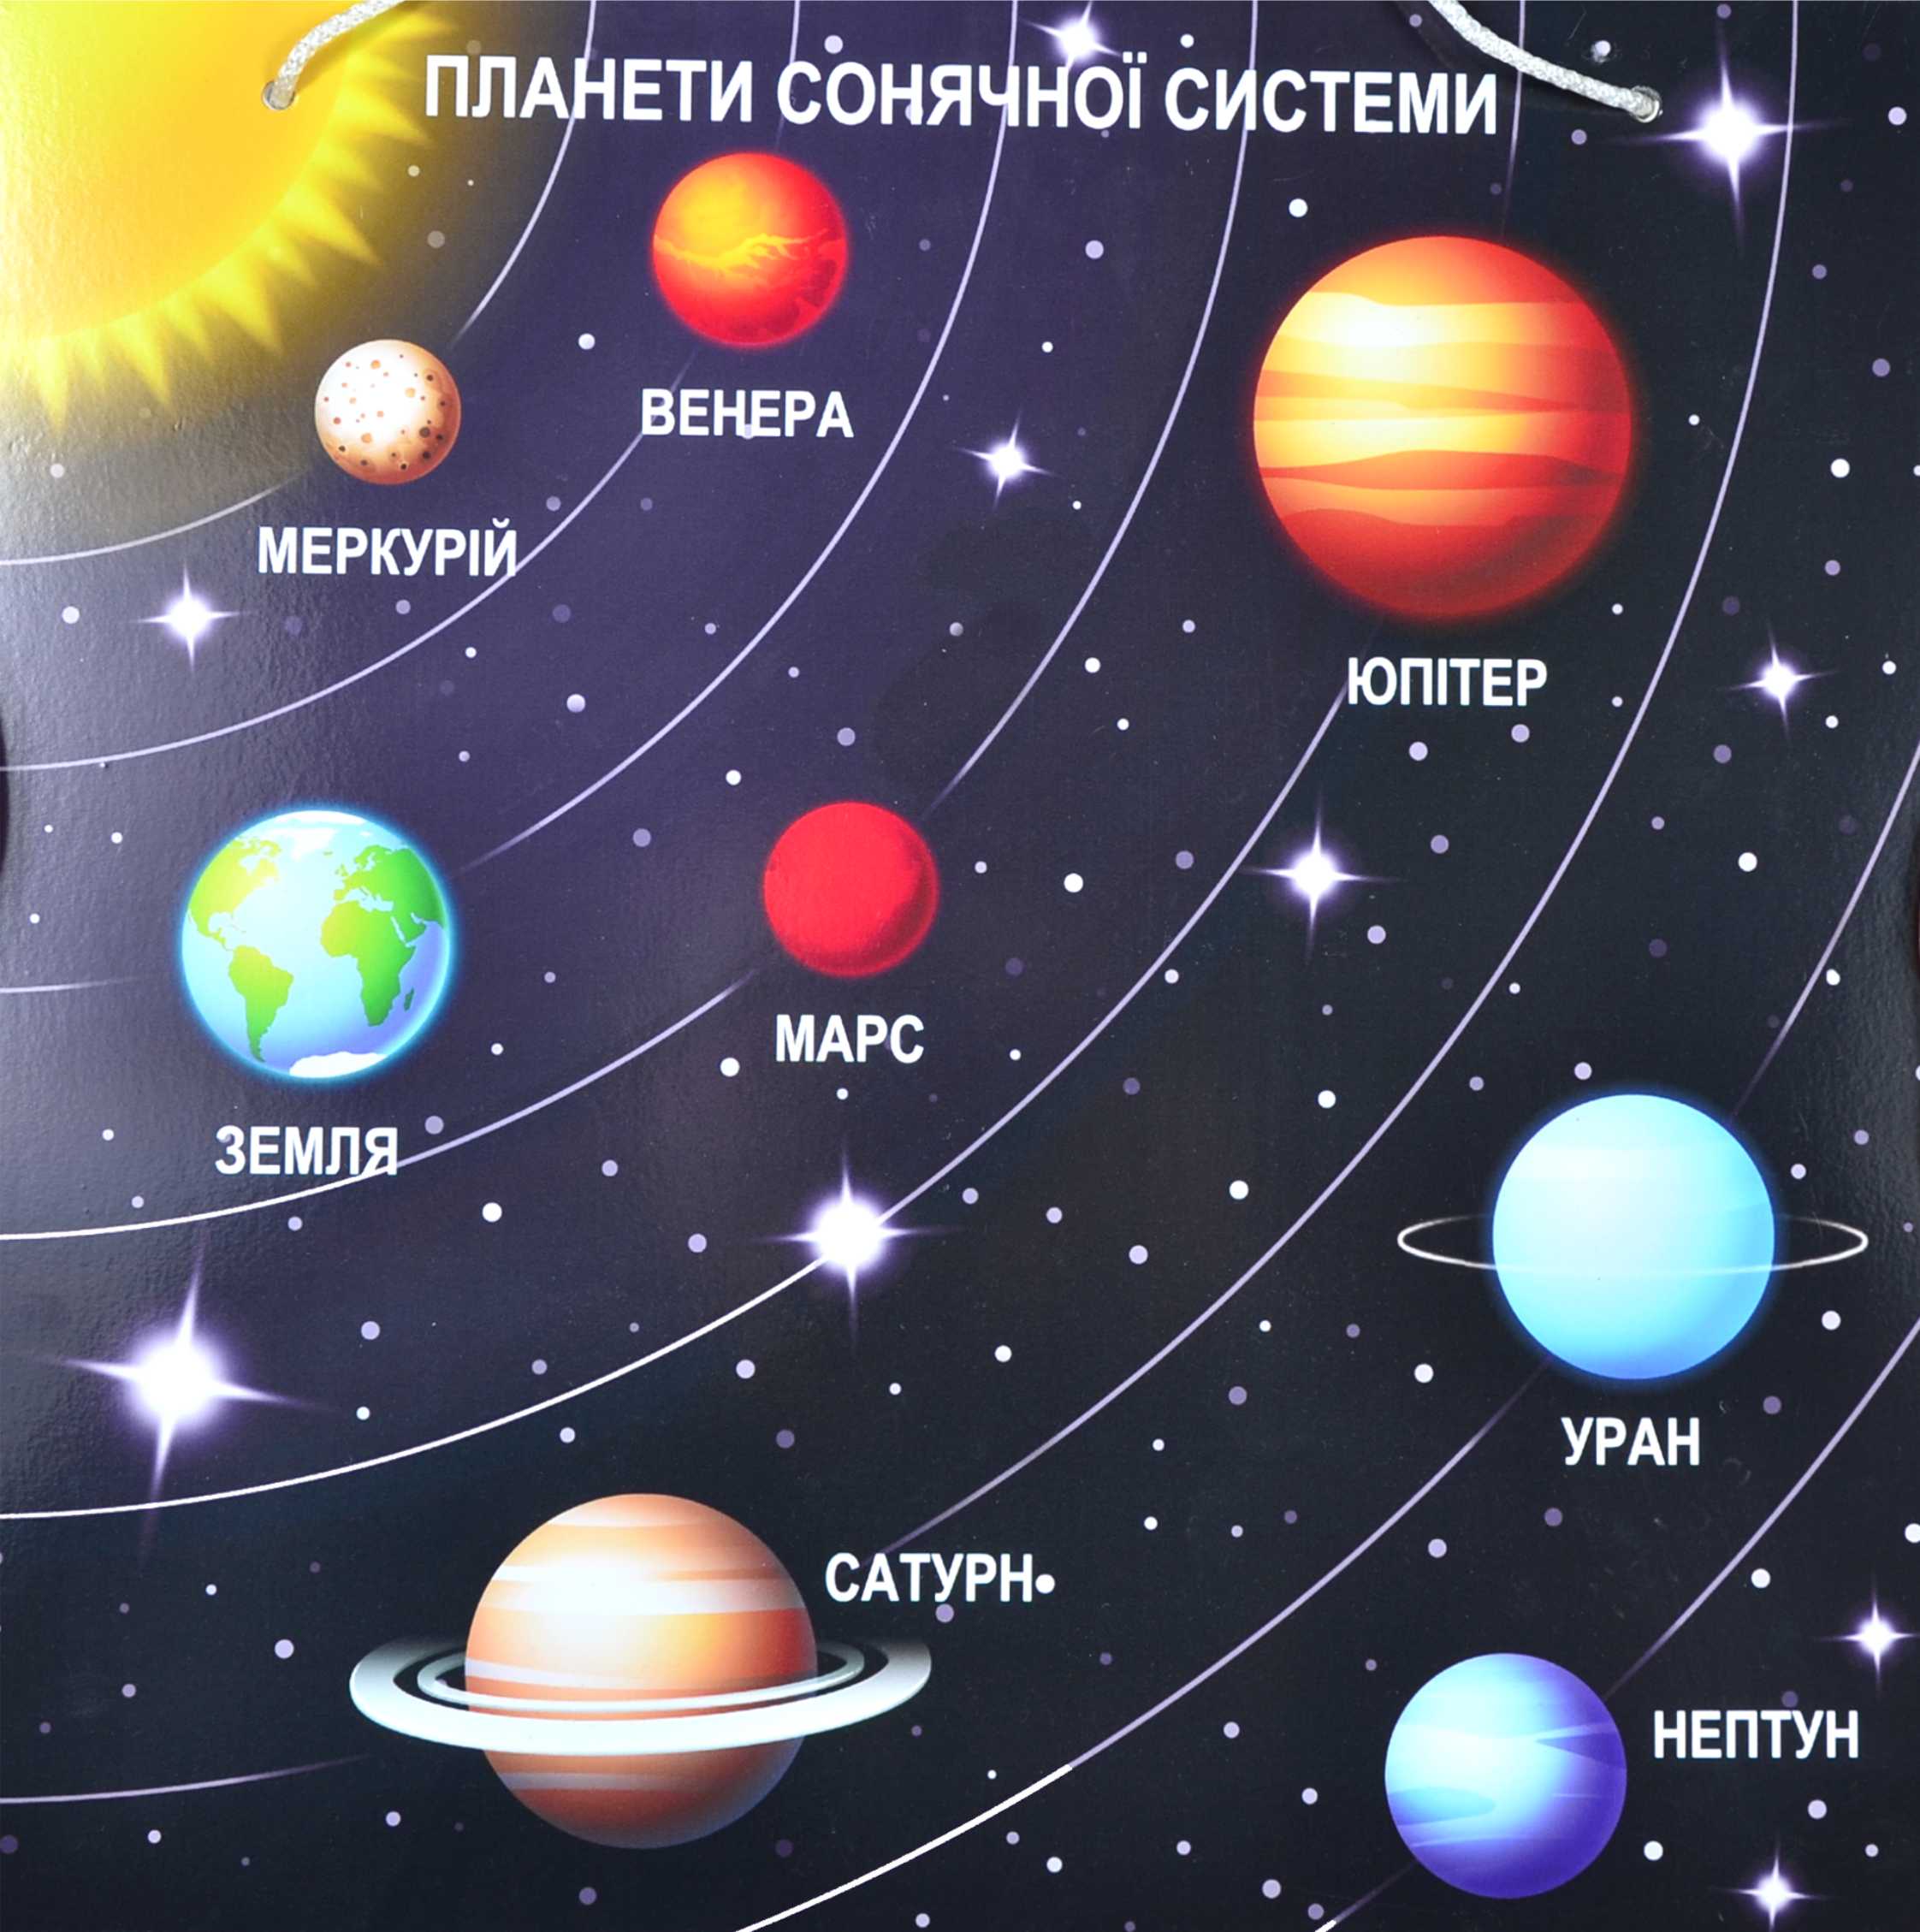 Сколько планет в солнечной системе фото. Солнечная система расположение плане. Солнечная система с названиями планет по порядку от солнца. Планеты солнечной системы по порядку от солнца с названиями для детей. Расположение планет солнечной системы.